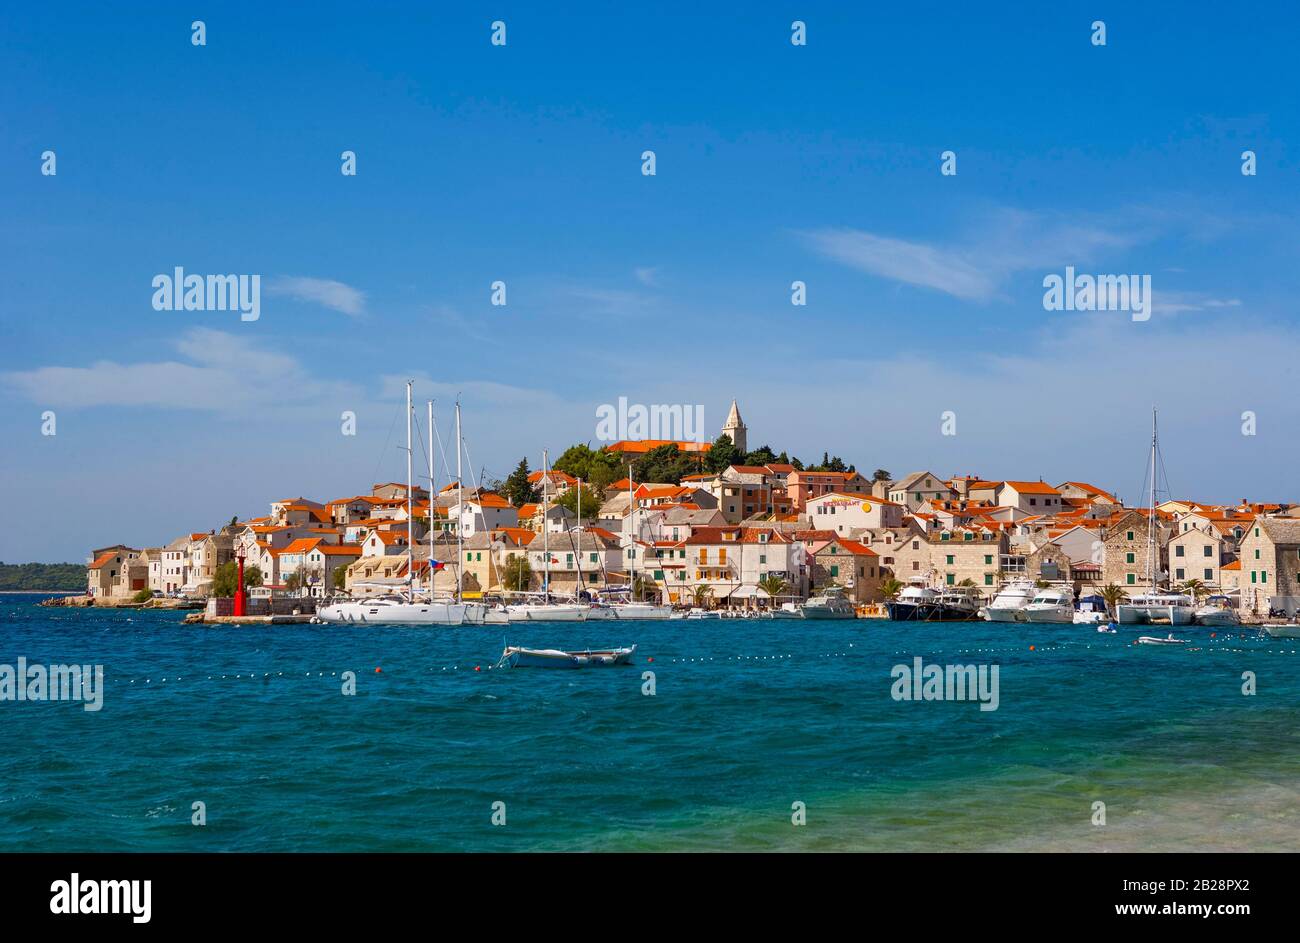 Primosten, Croatian Adriatic Coast, Central Dalmatia, Dalmatia, Croatia Stock Photo